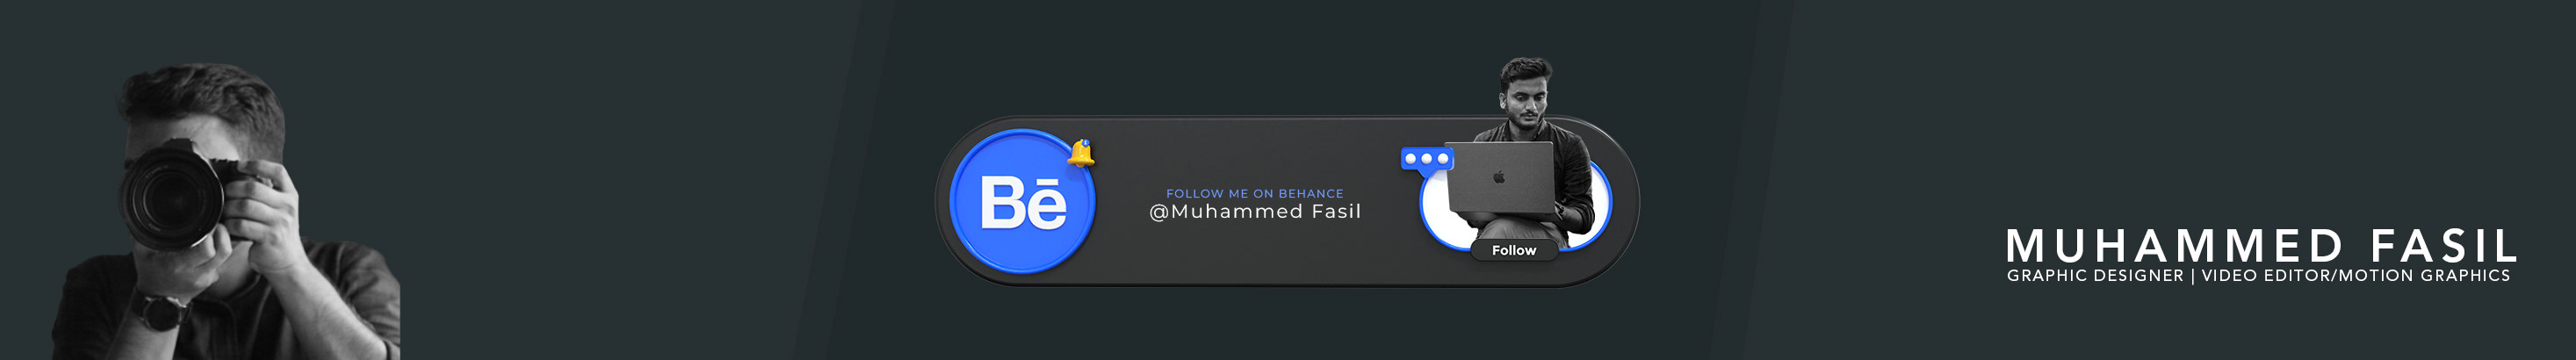 Bannière de profil de Muhammed Fasil